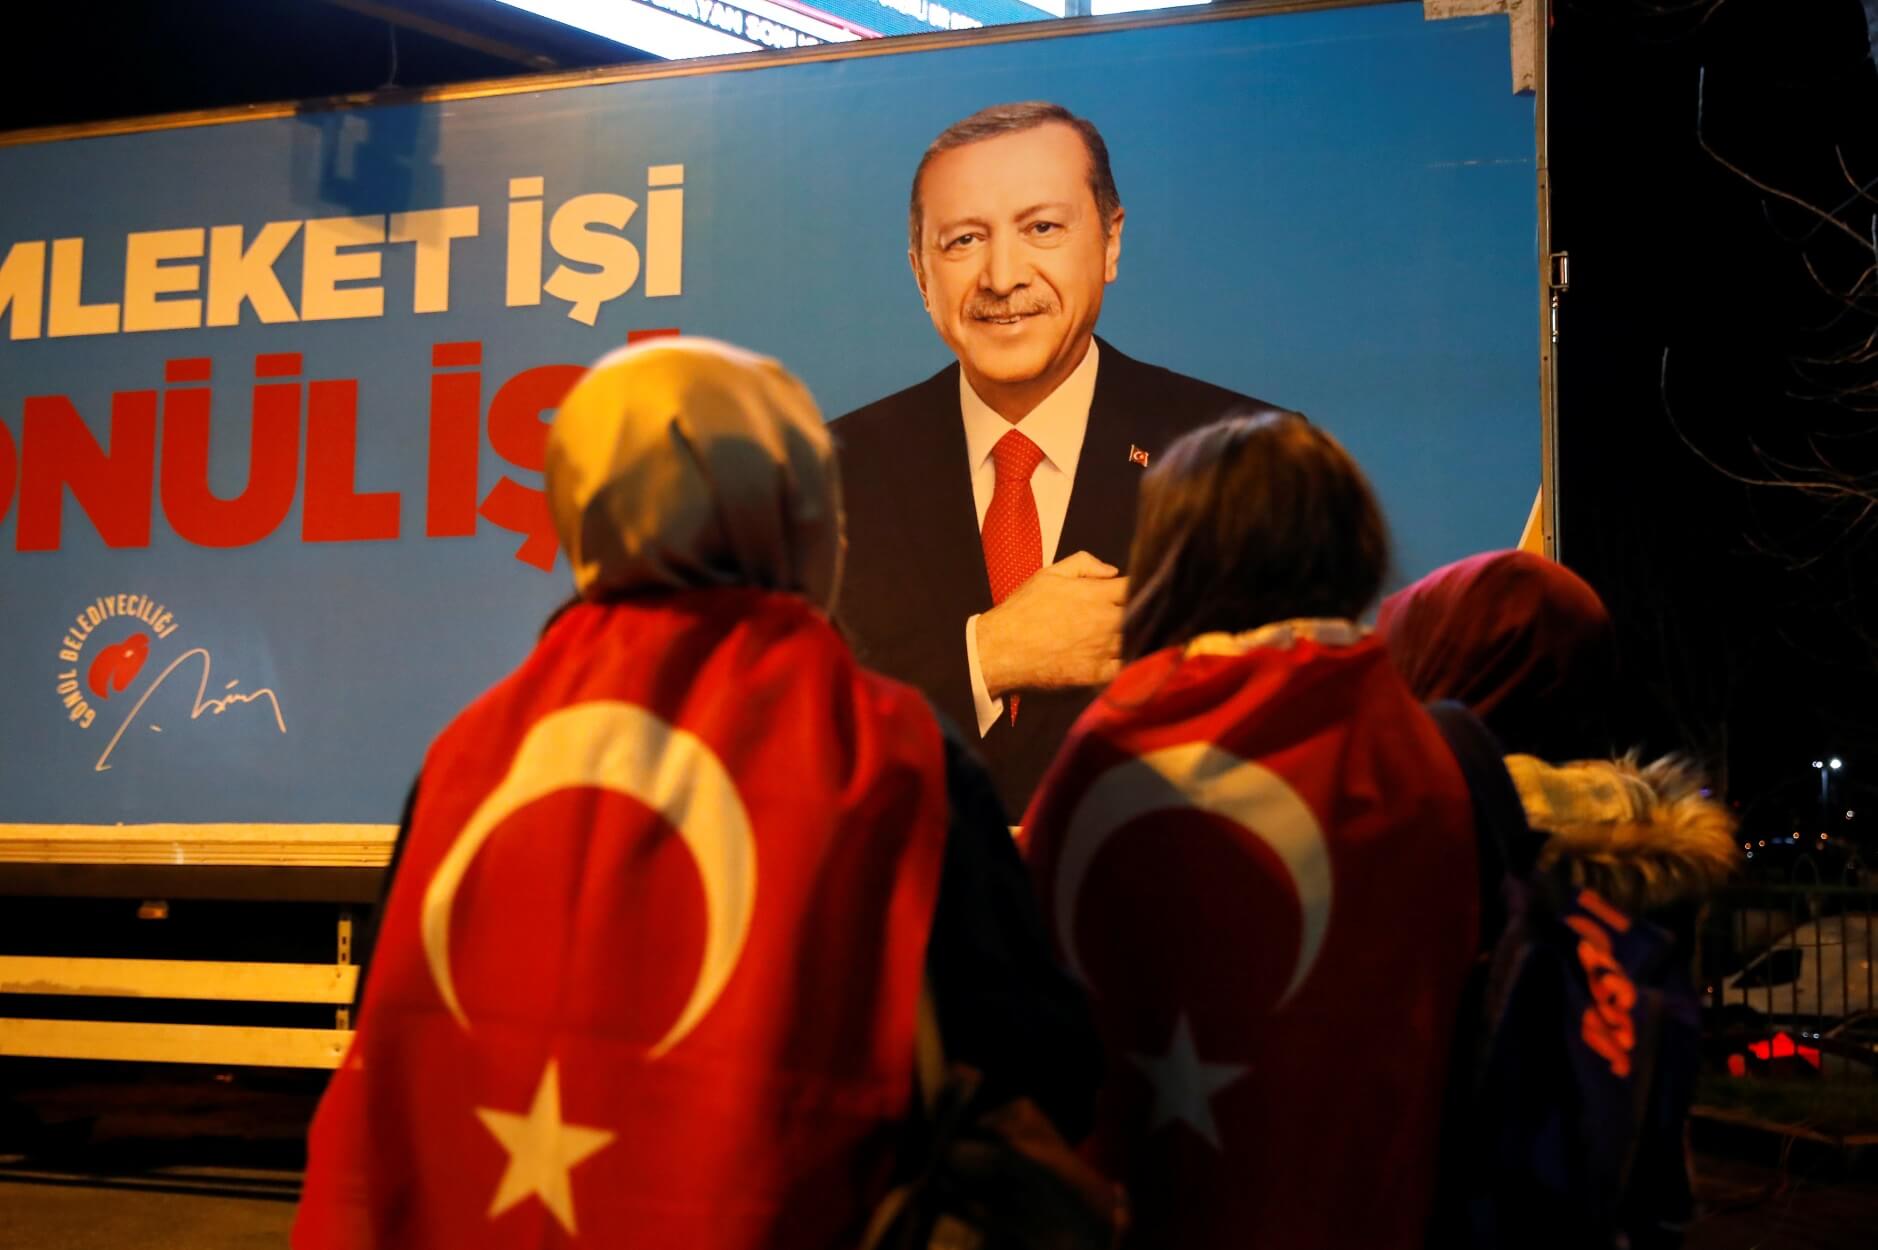 Τουρκία – εκλογές: Μάλλον “χάσαμε” την Κωνσταντινούπολη ομολογεί ο Ταγίπ Ερντογάν!